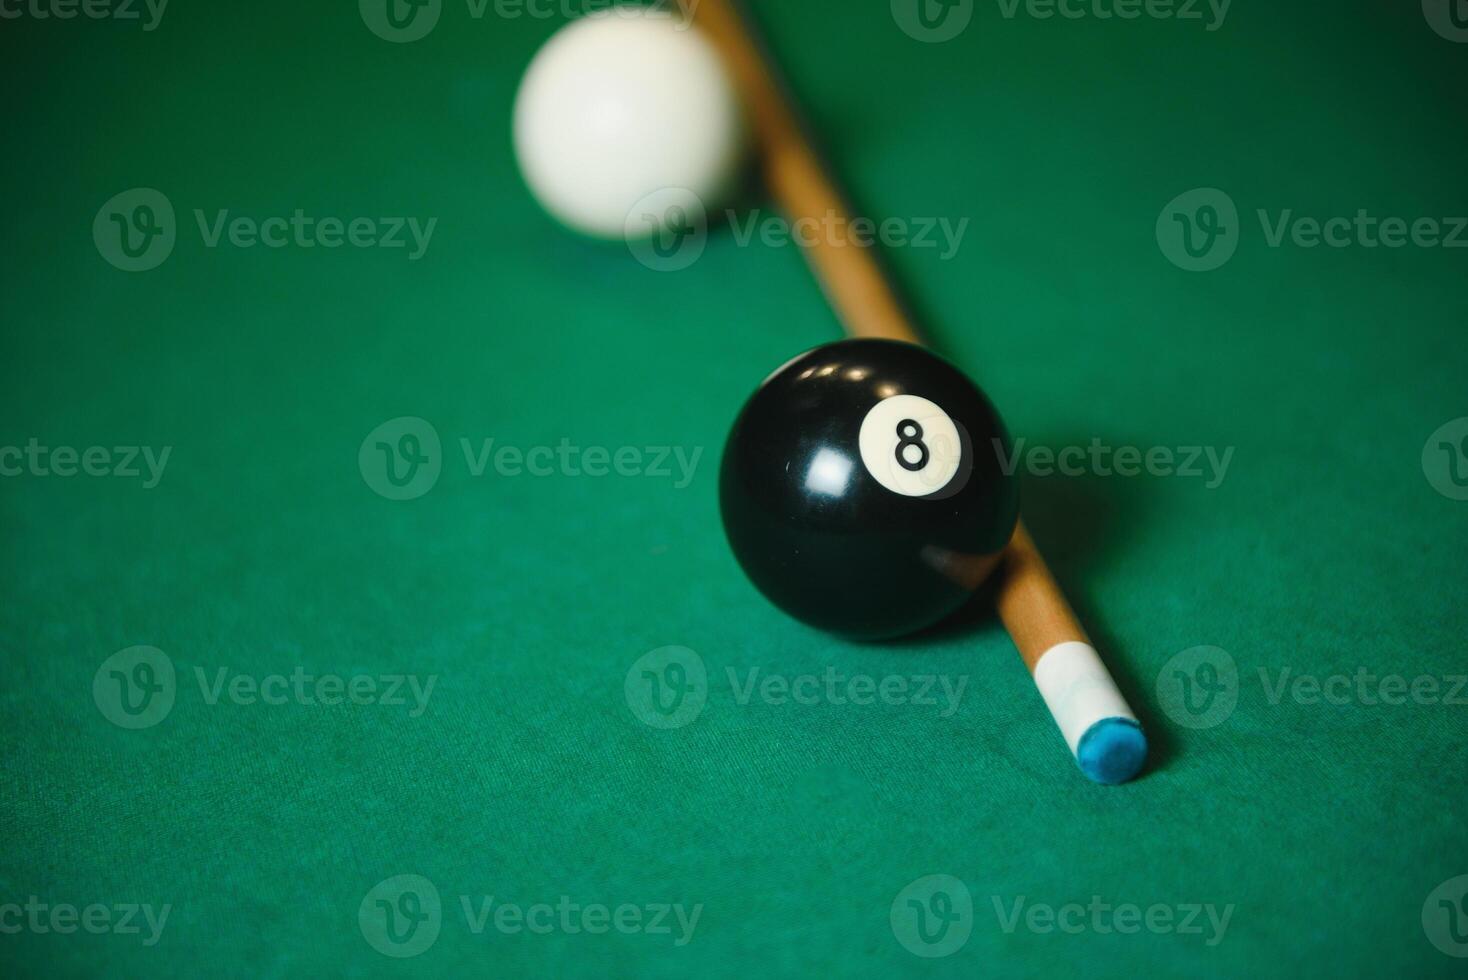 zwart bal schot in snooker spel. foto